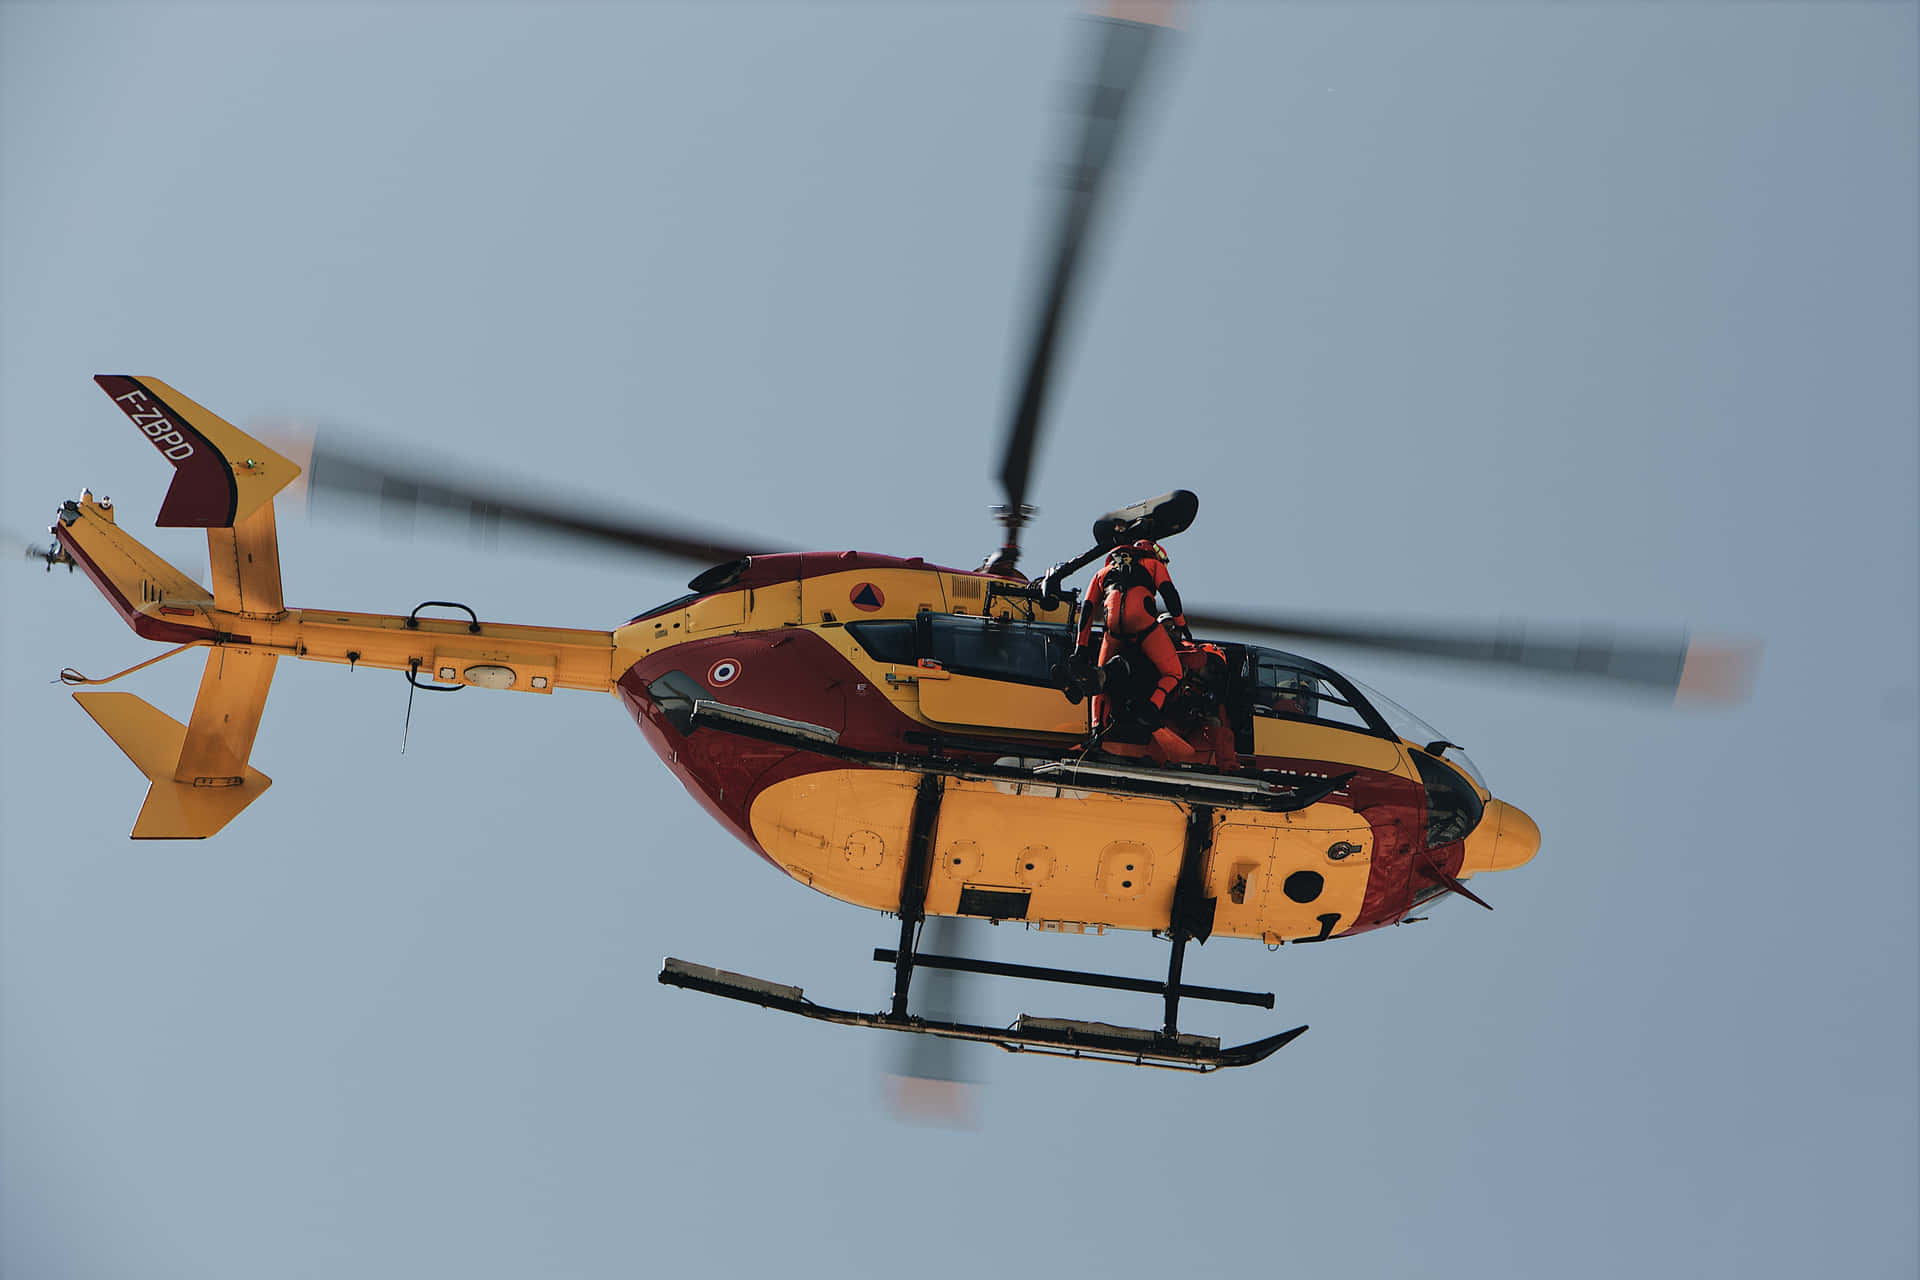 Helikopterbild5184 X 3456